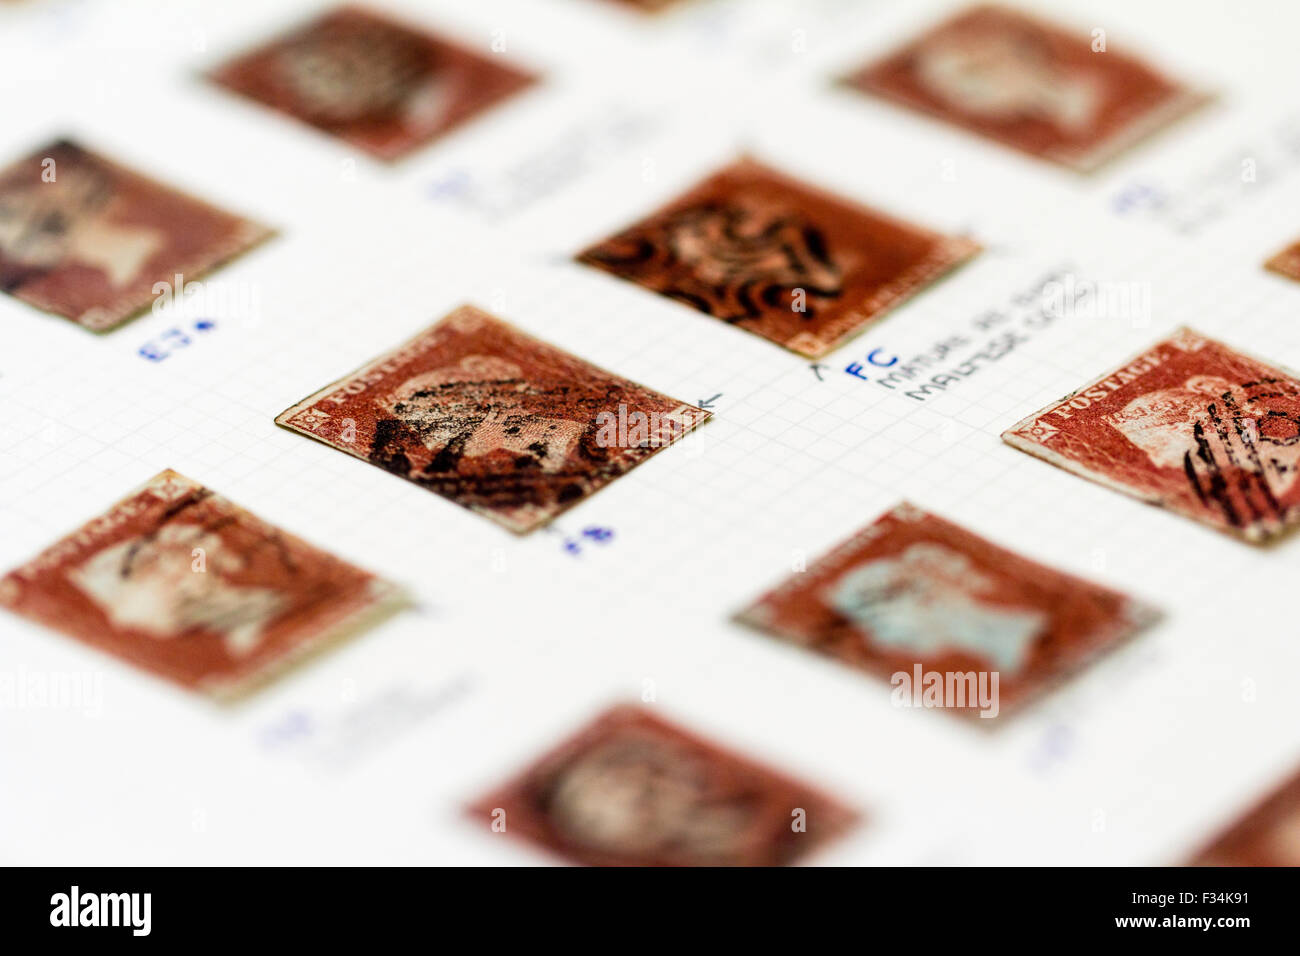 Viktorianische Briefmarkensammlung, Britische Penny roten Album Seite, mit kommentierten Hinweise zu den Details der einzelnen Stempel und Stornierung Falls bekannt. Stockfoto